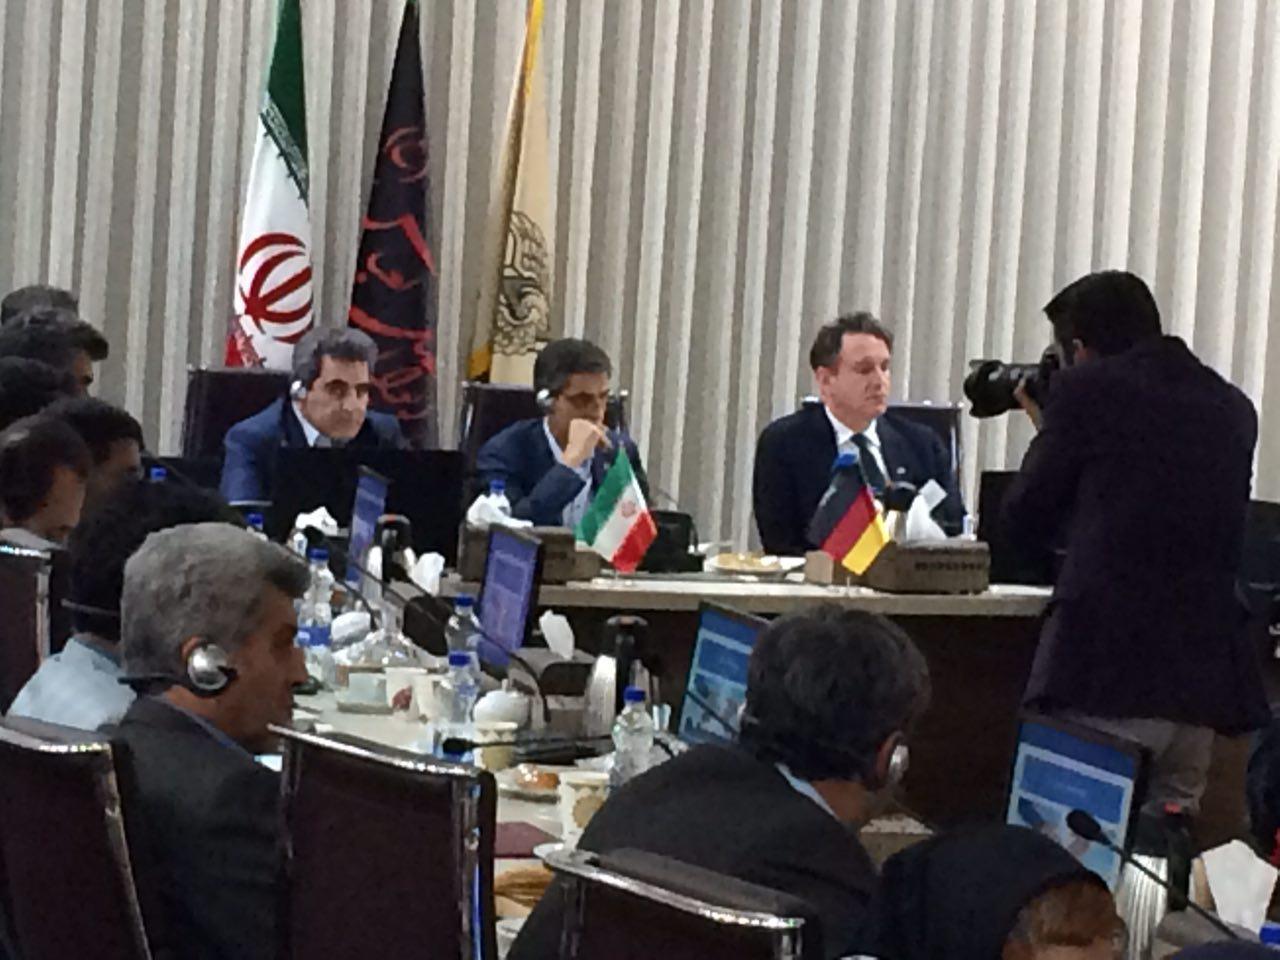 گمرک ایران میزبان اجلاس آتی کمیته فنی کشورهای عضو اکو